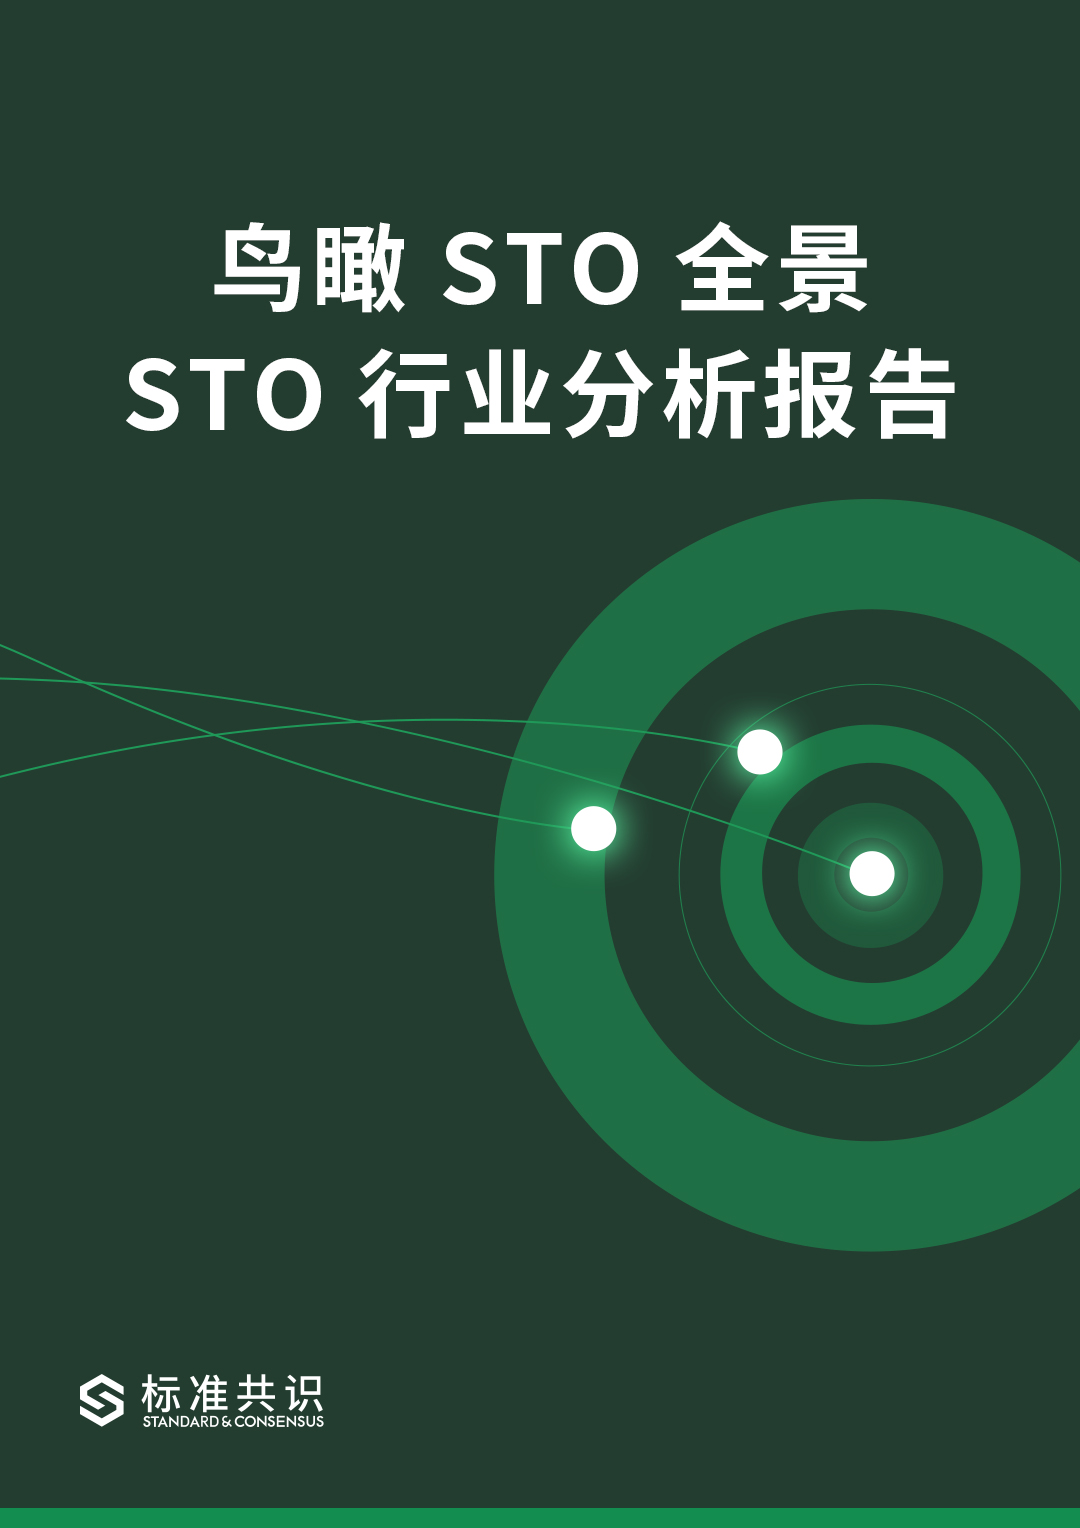 鸟瞰 STO 全景 - STO 行业分析报告｜标准共识配图(1)